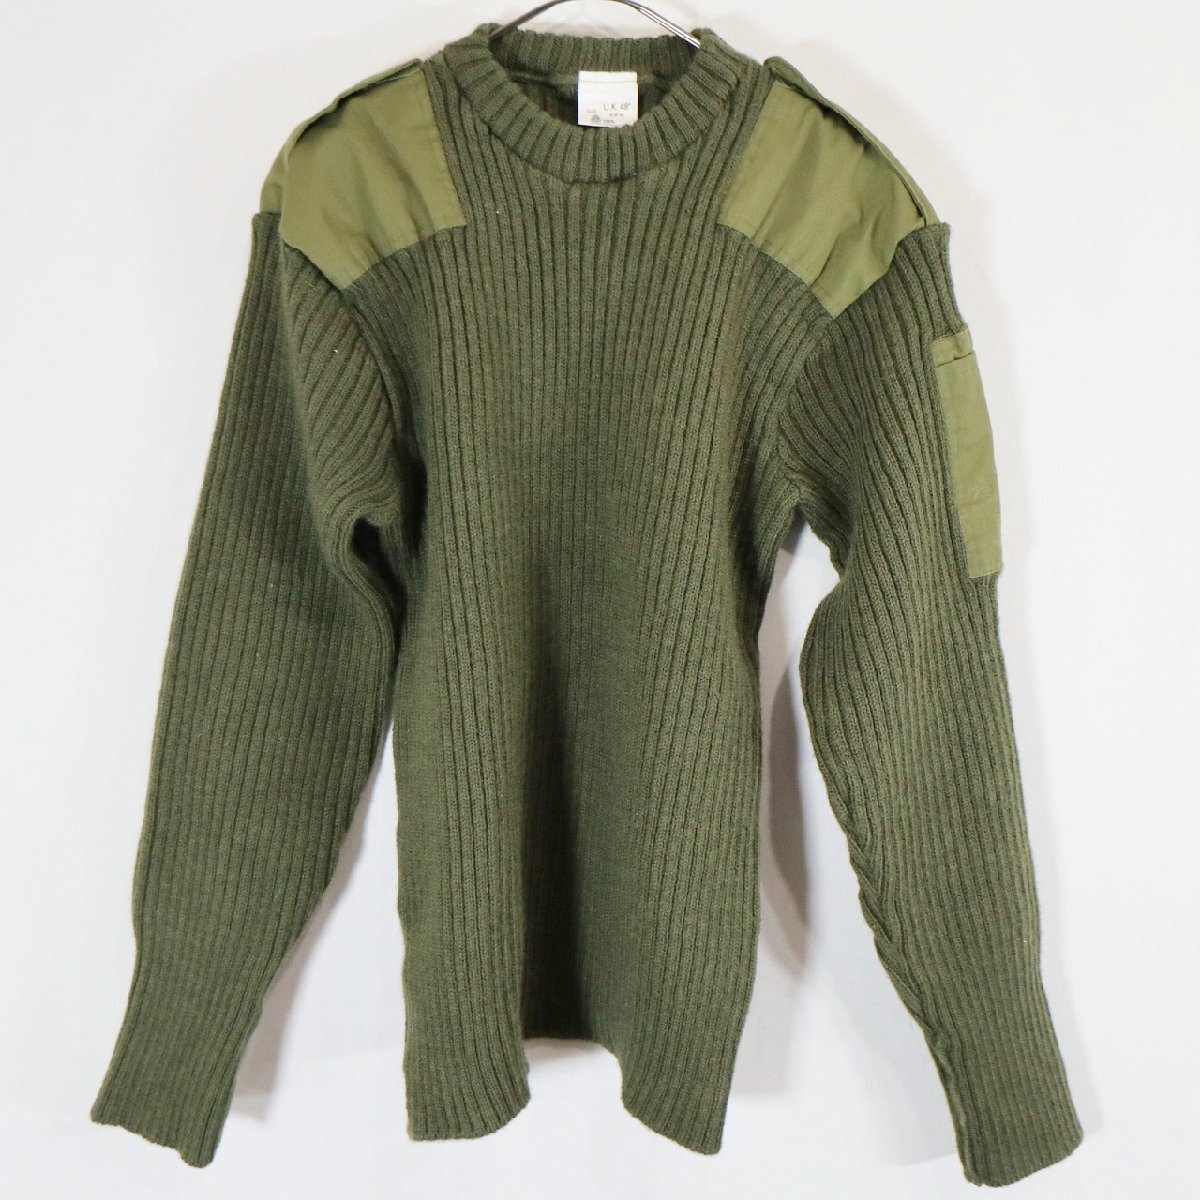  Англия производства commando свитер патрубок patch вязаный свитер милитари способ зеленый ( мужской 48 ) N2494 1 иен старт 